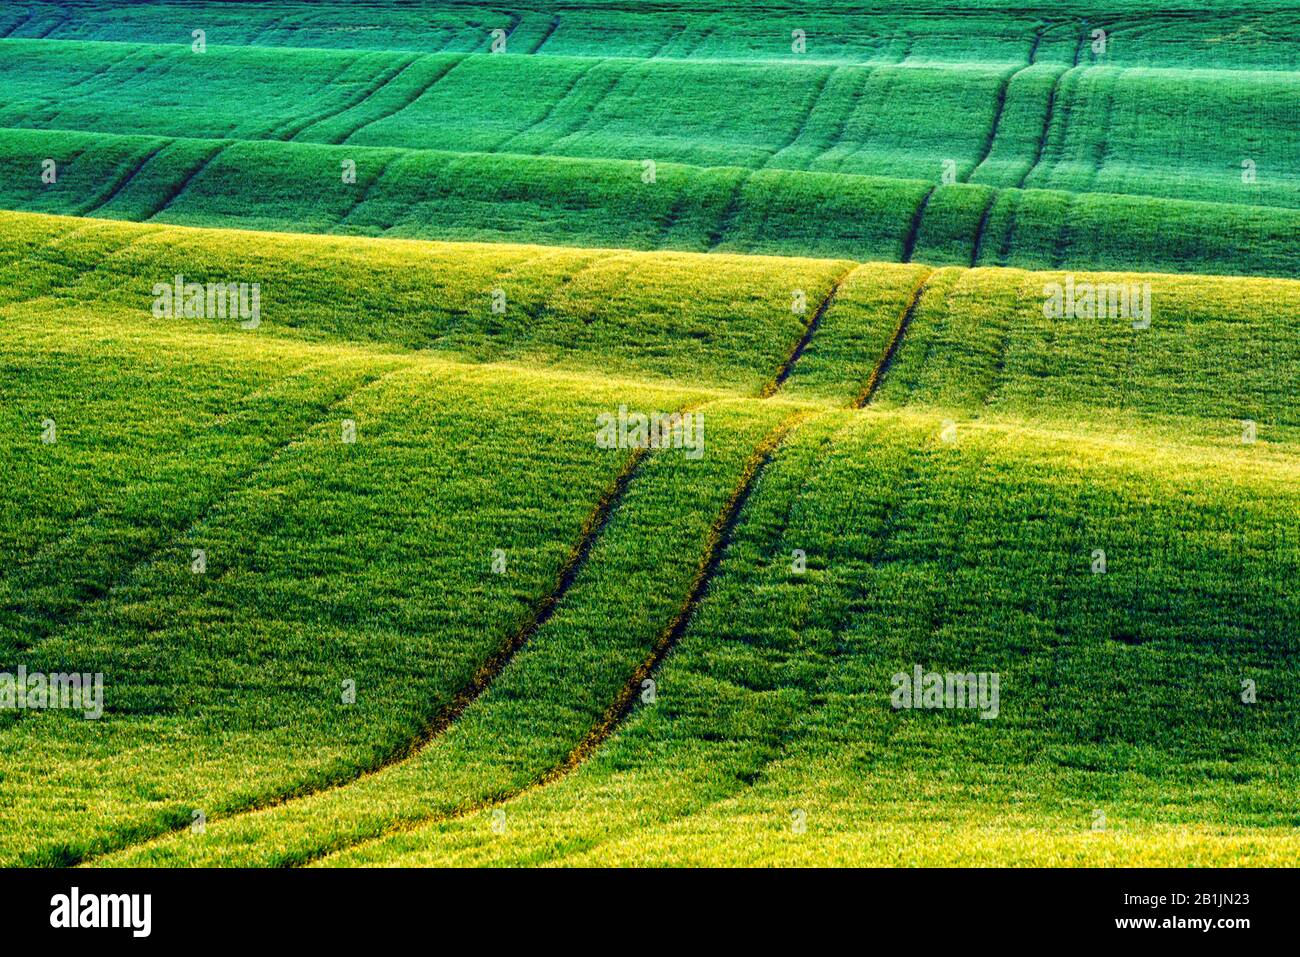 Les rangées de blé vert et les vagues des champs agricoles de la Moravie du Sud, République tchèque. Peut être utilisé comme fond de nature ou texture Banque D'Images